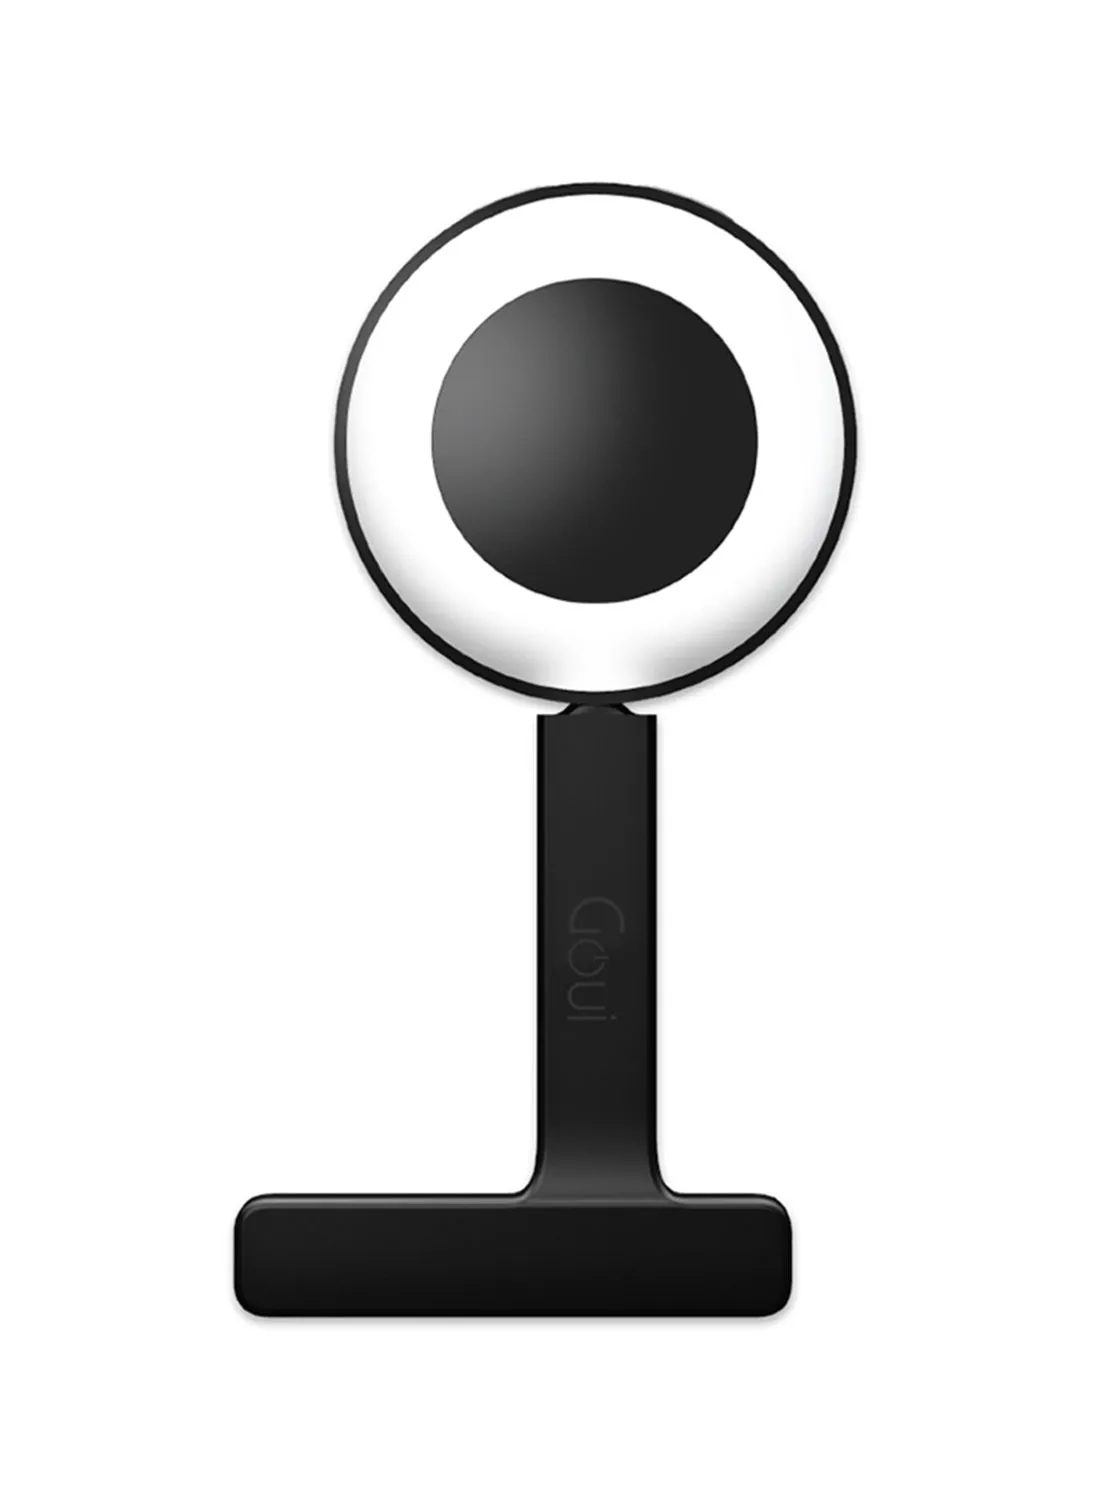 مصباح تعبئة مغناطيسي من Goui لهاتف iPhone متوافق مع حزام 360 درجة باللون الأسود الحجري